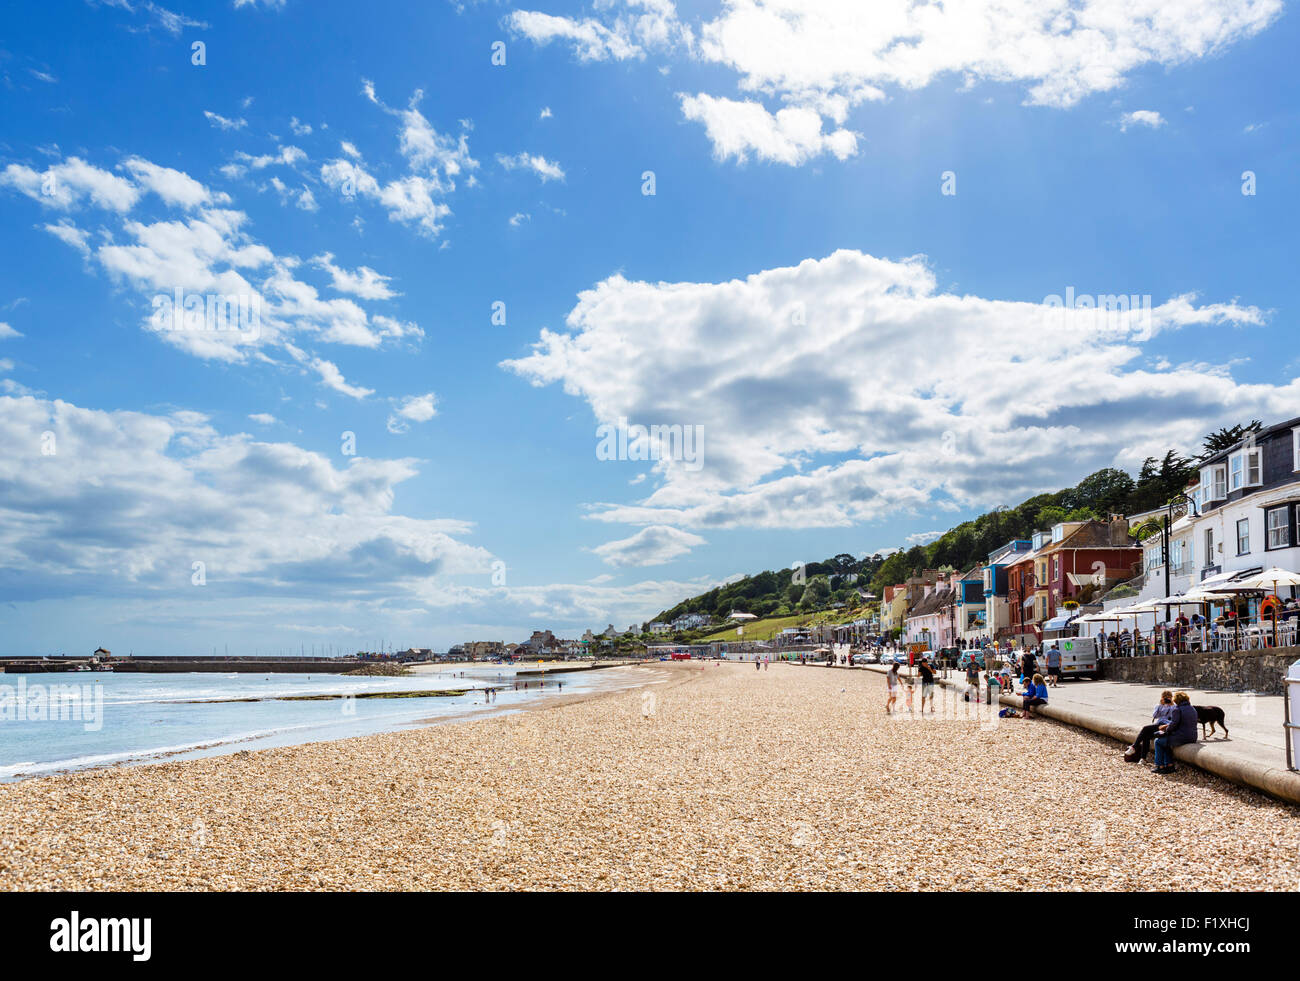 La plage de la ville avec le derrière de Cobb, Lyme Regis, la baie de Lyme, sur la côte jurassique, Dorset, England, UK Banque D'Images